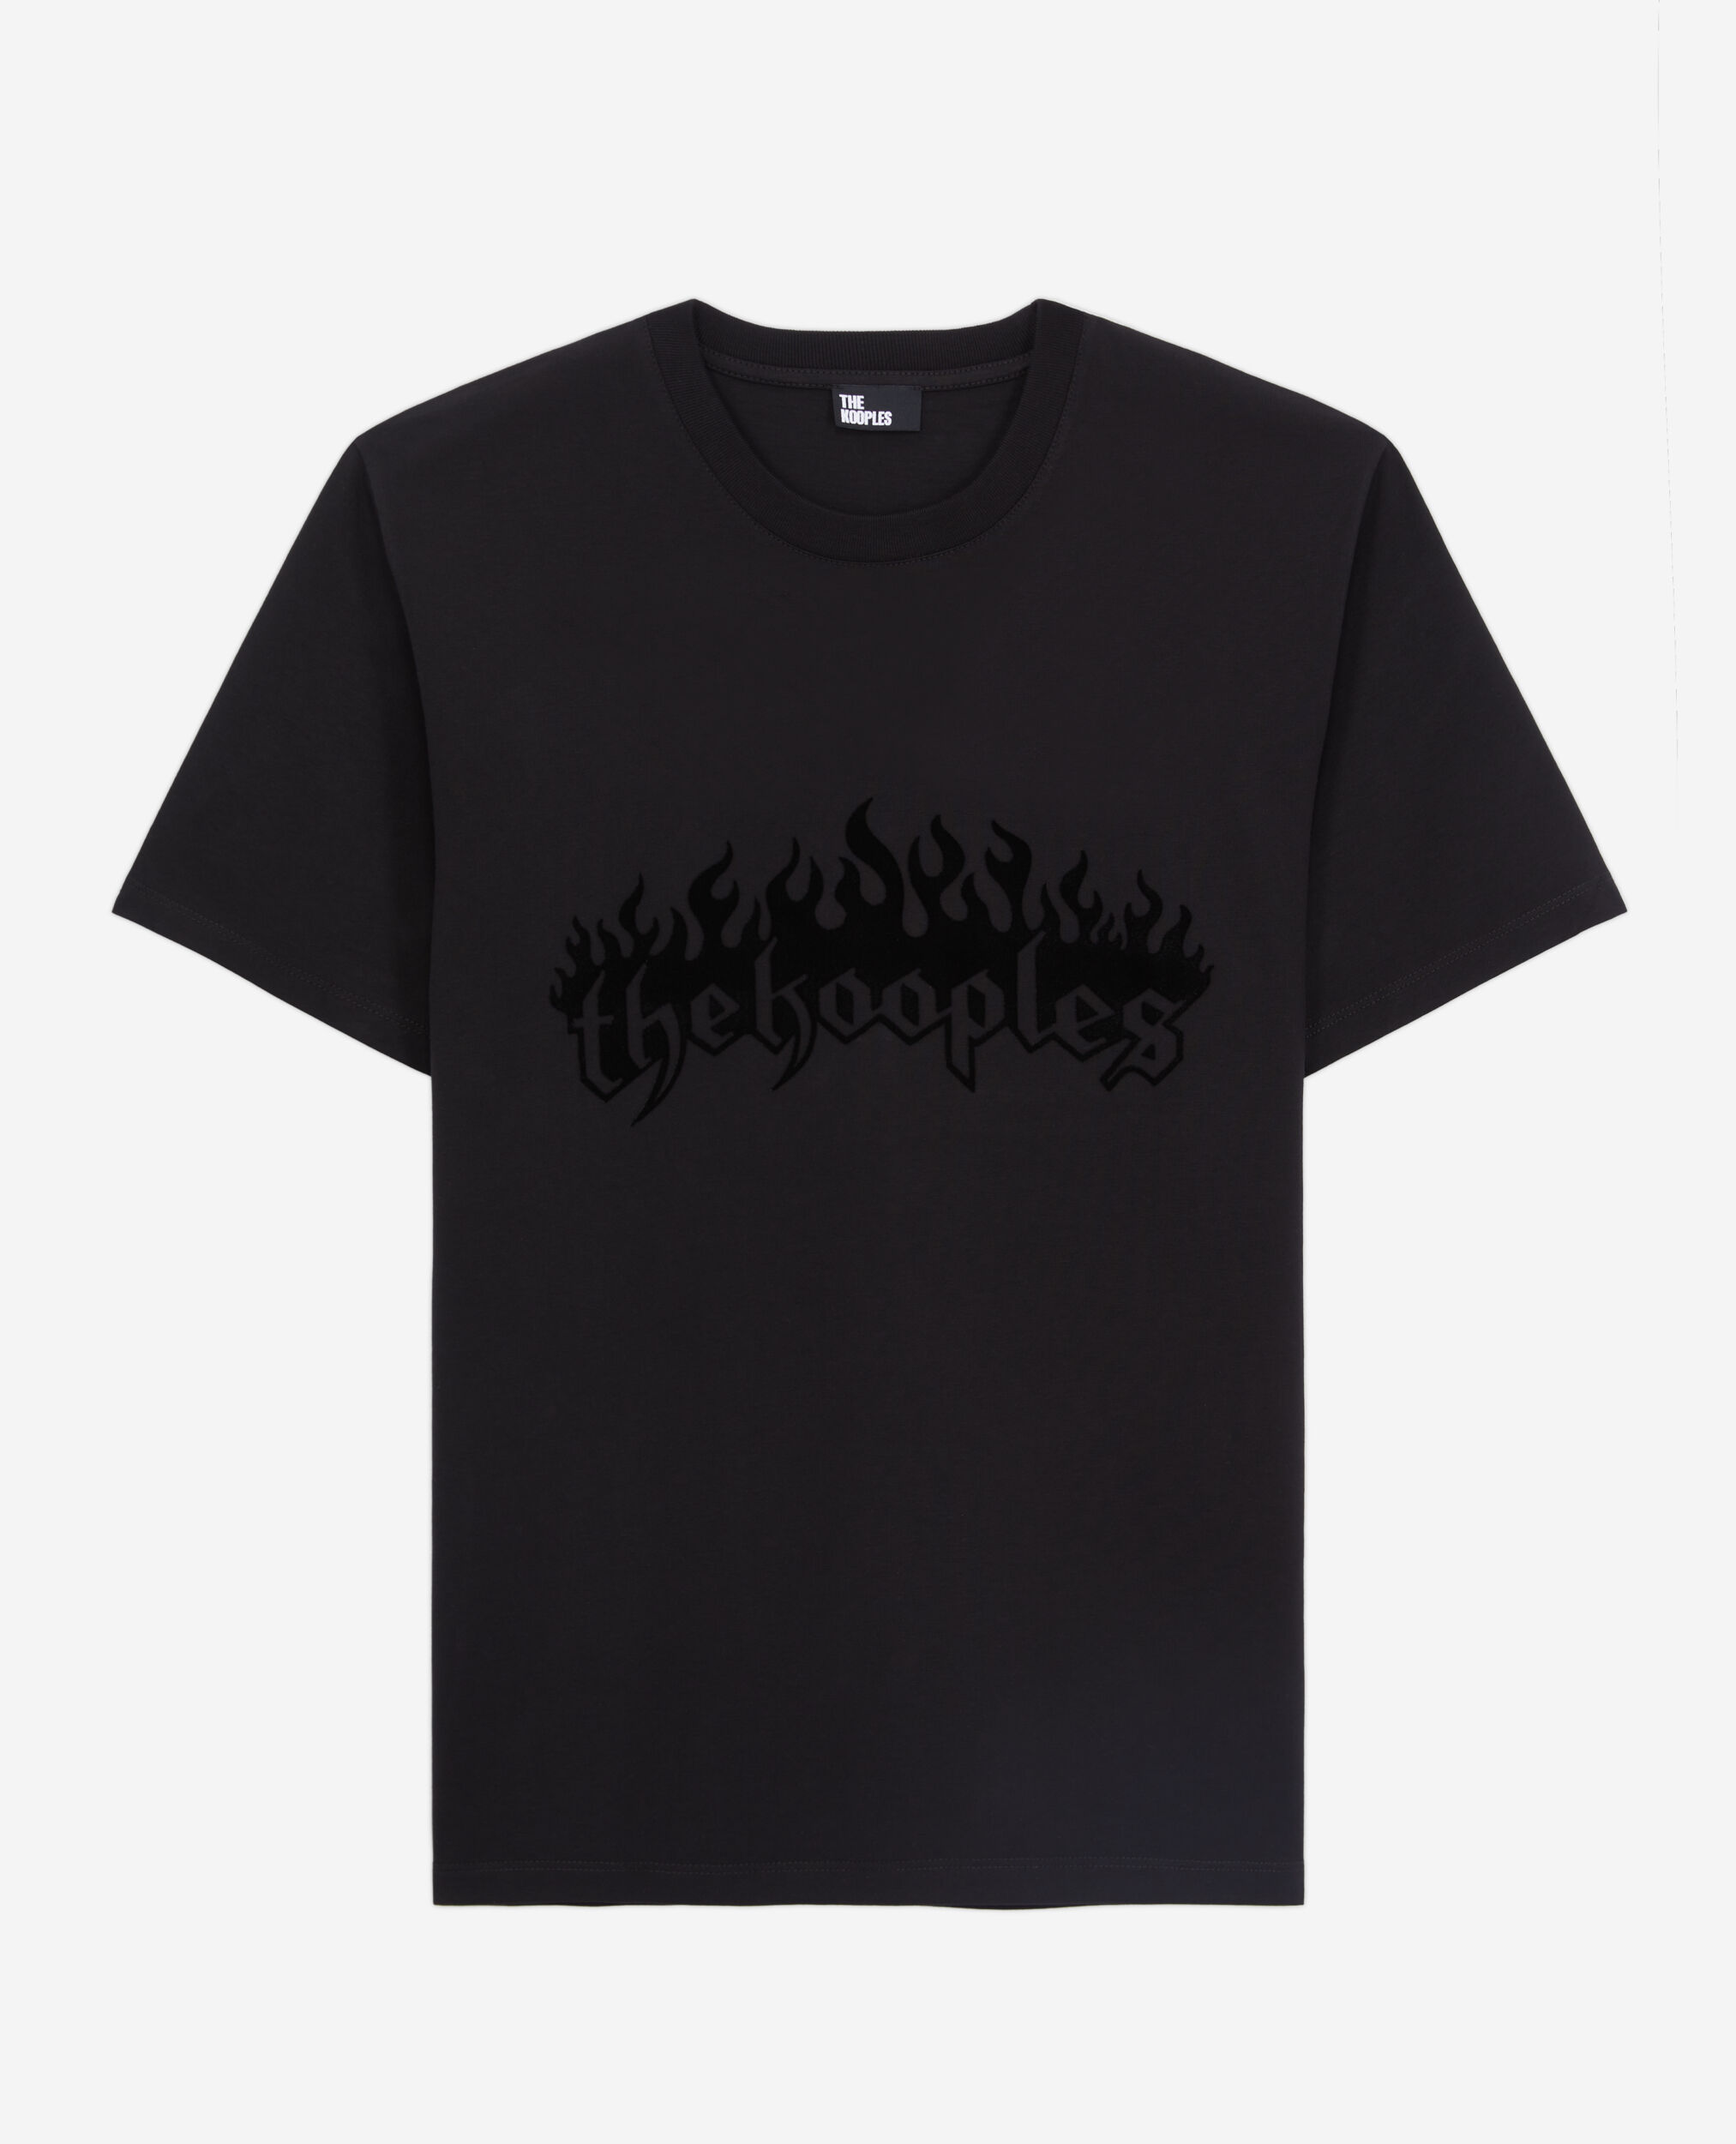 T-shirt Homme noir avec flocage Kooples on fire en velours, BLACK, hi-res image number null